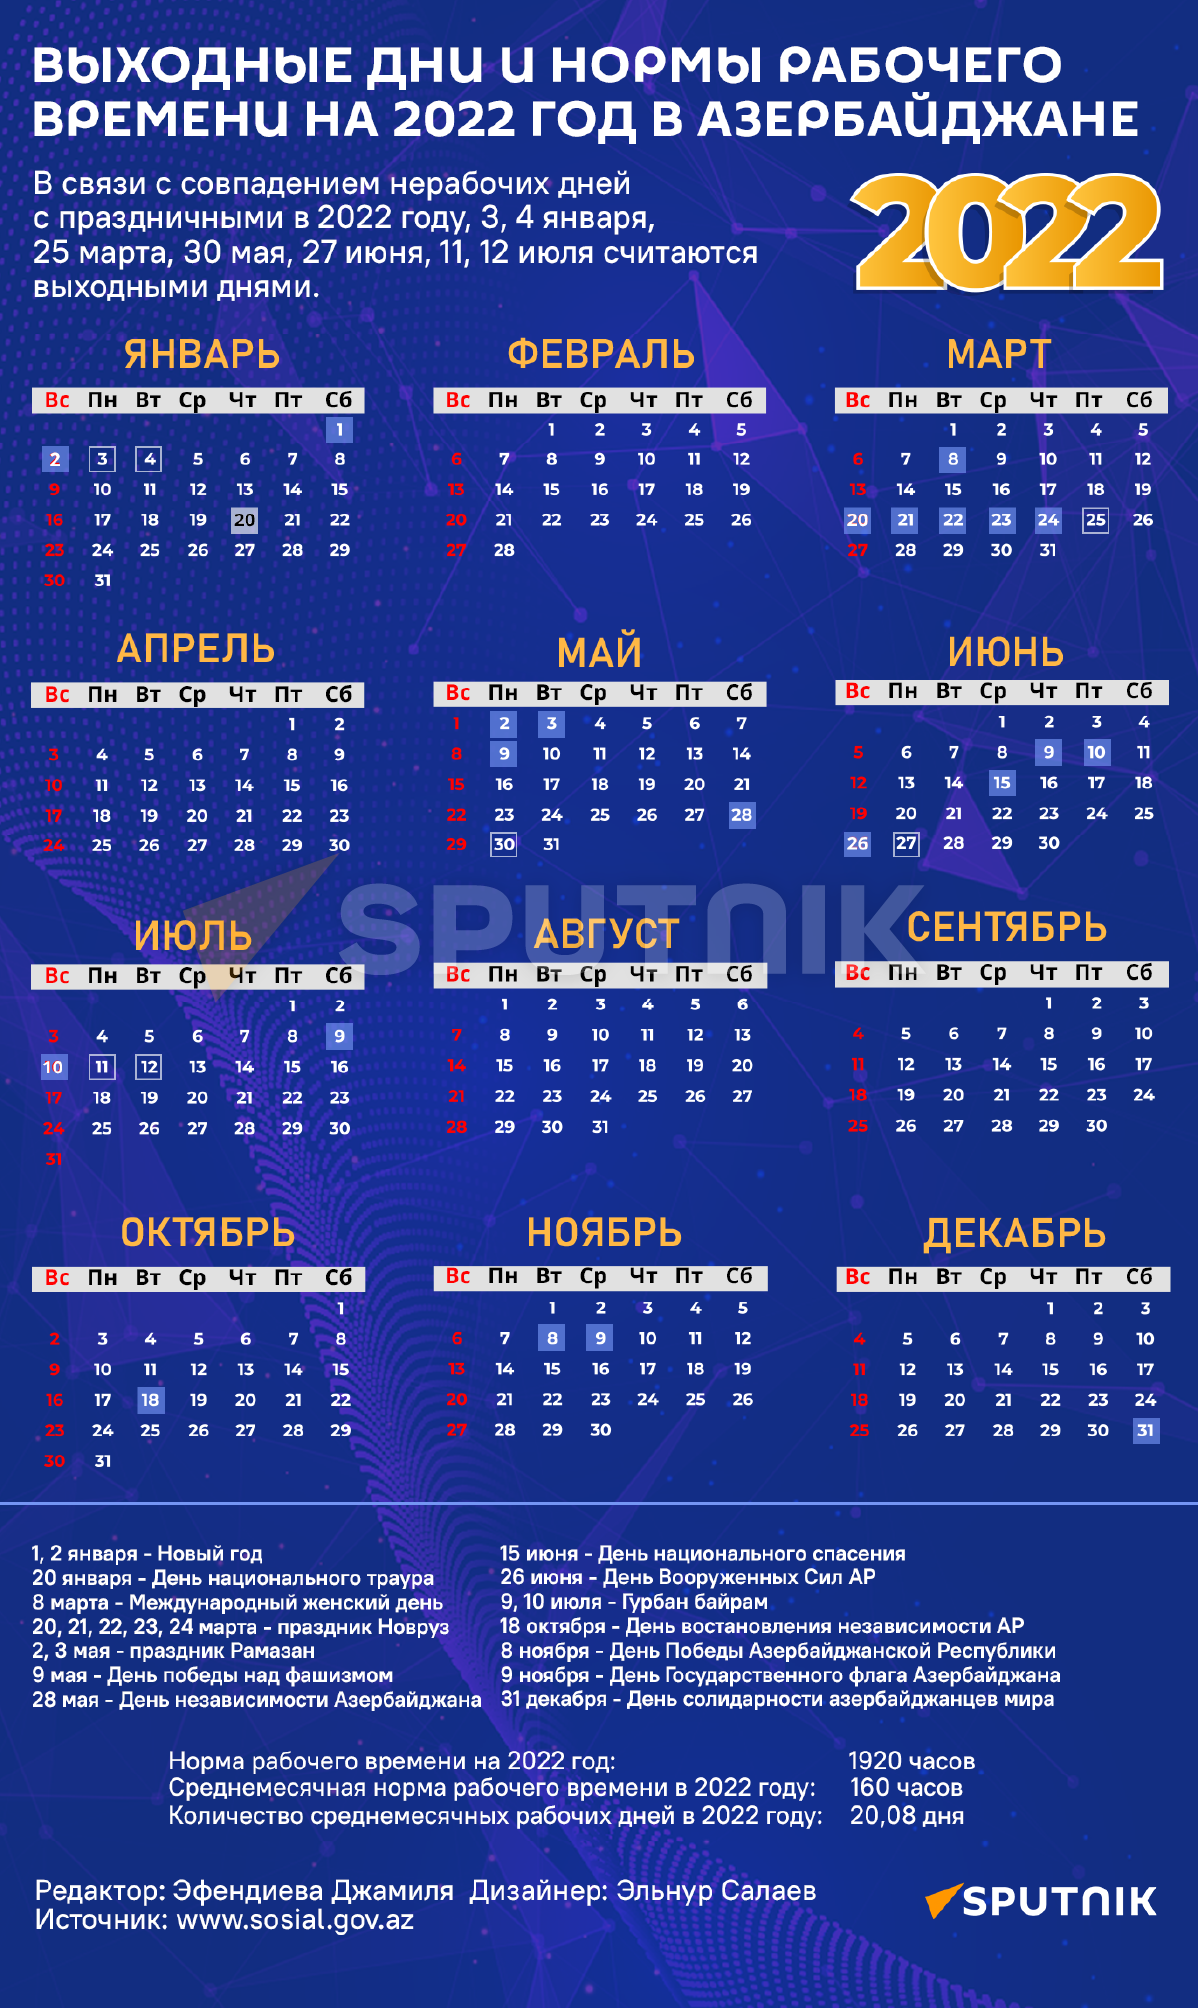 Инфографика: Выходные дни 2022 года в Азербайджан - Sputnik Азербайджан